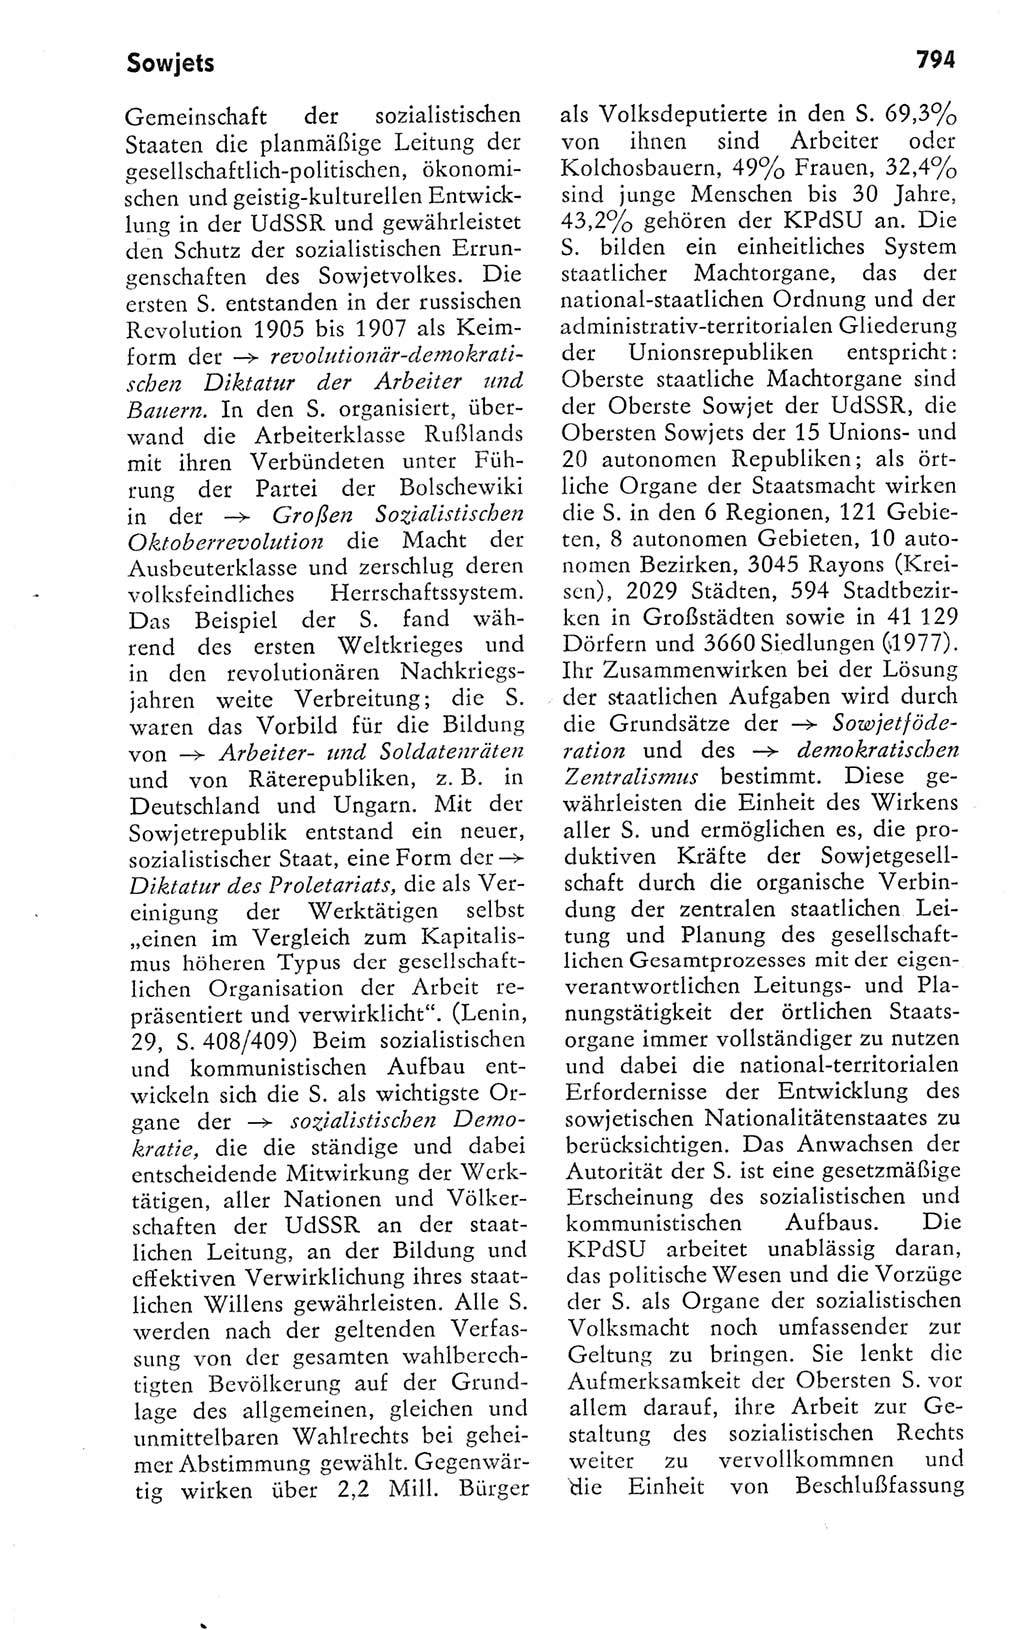 Kleines politisches Wörterbuch [Deutsche Demokratische Republik (DDR)] 1978, Seite 794 (Kl. pol. Wb. DDR 1978, S. 794)